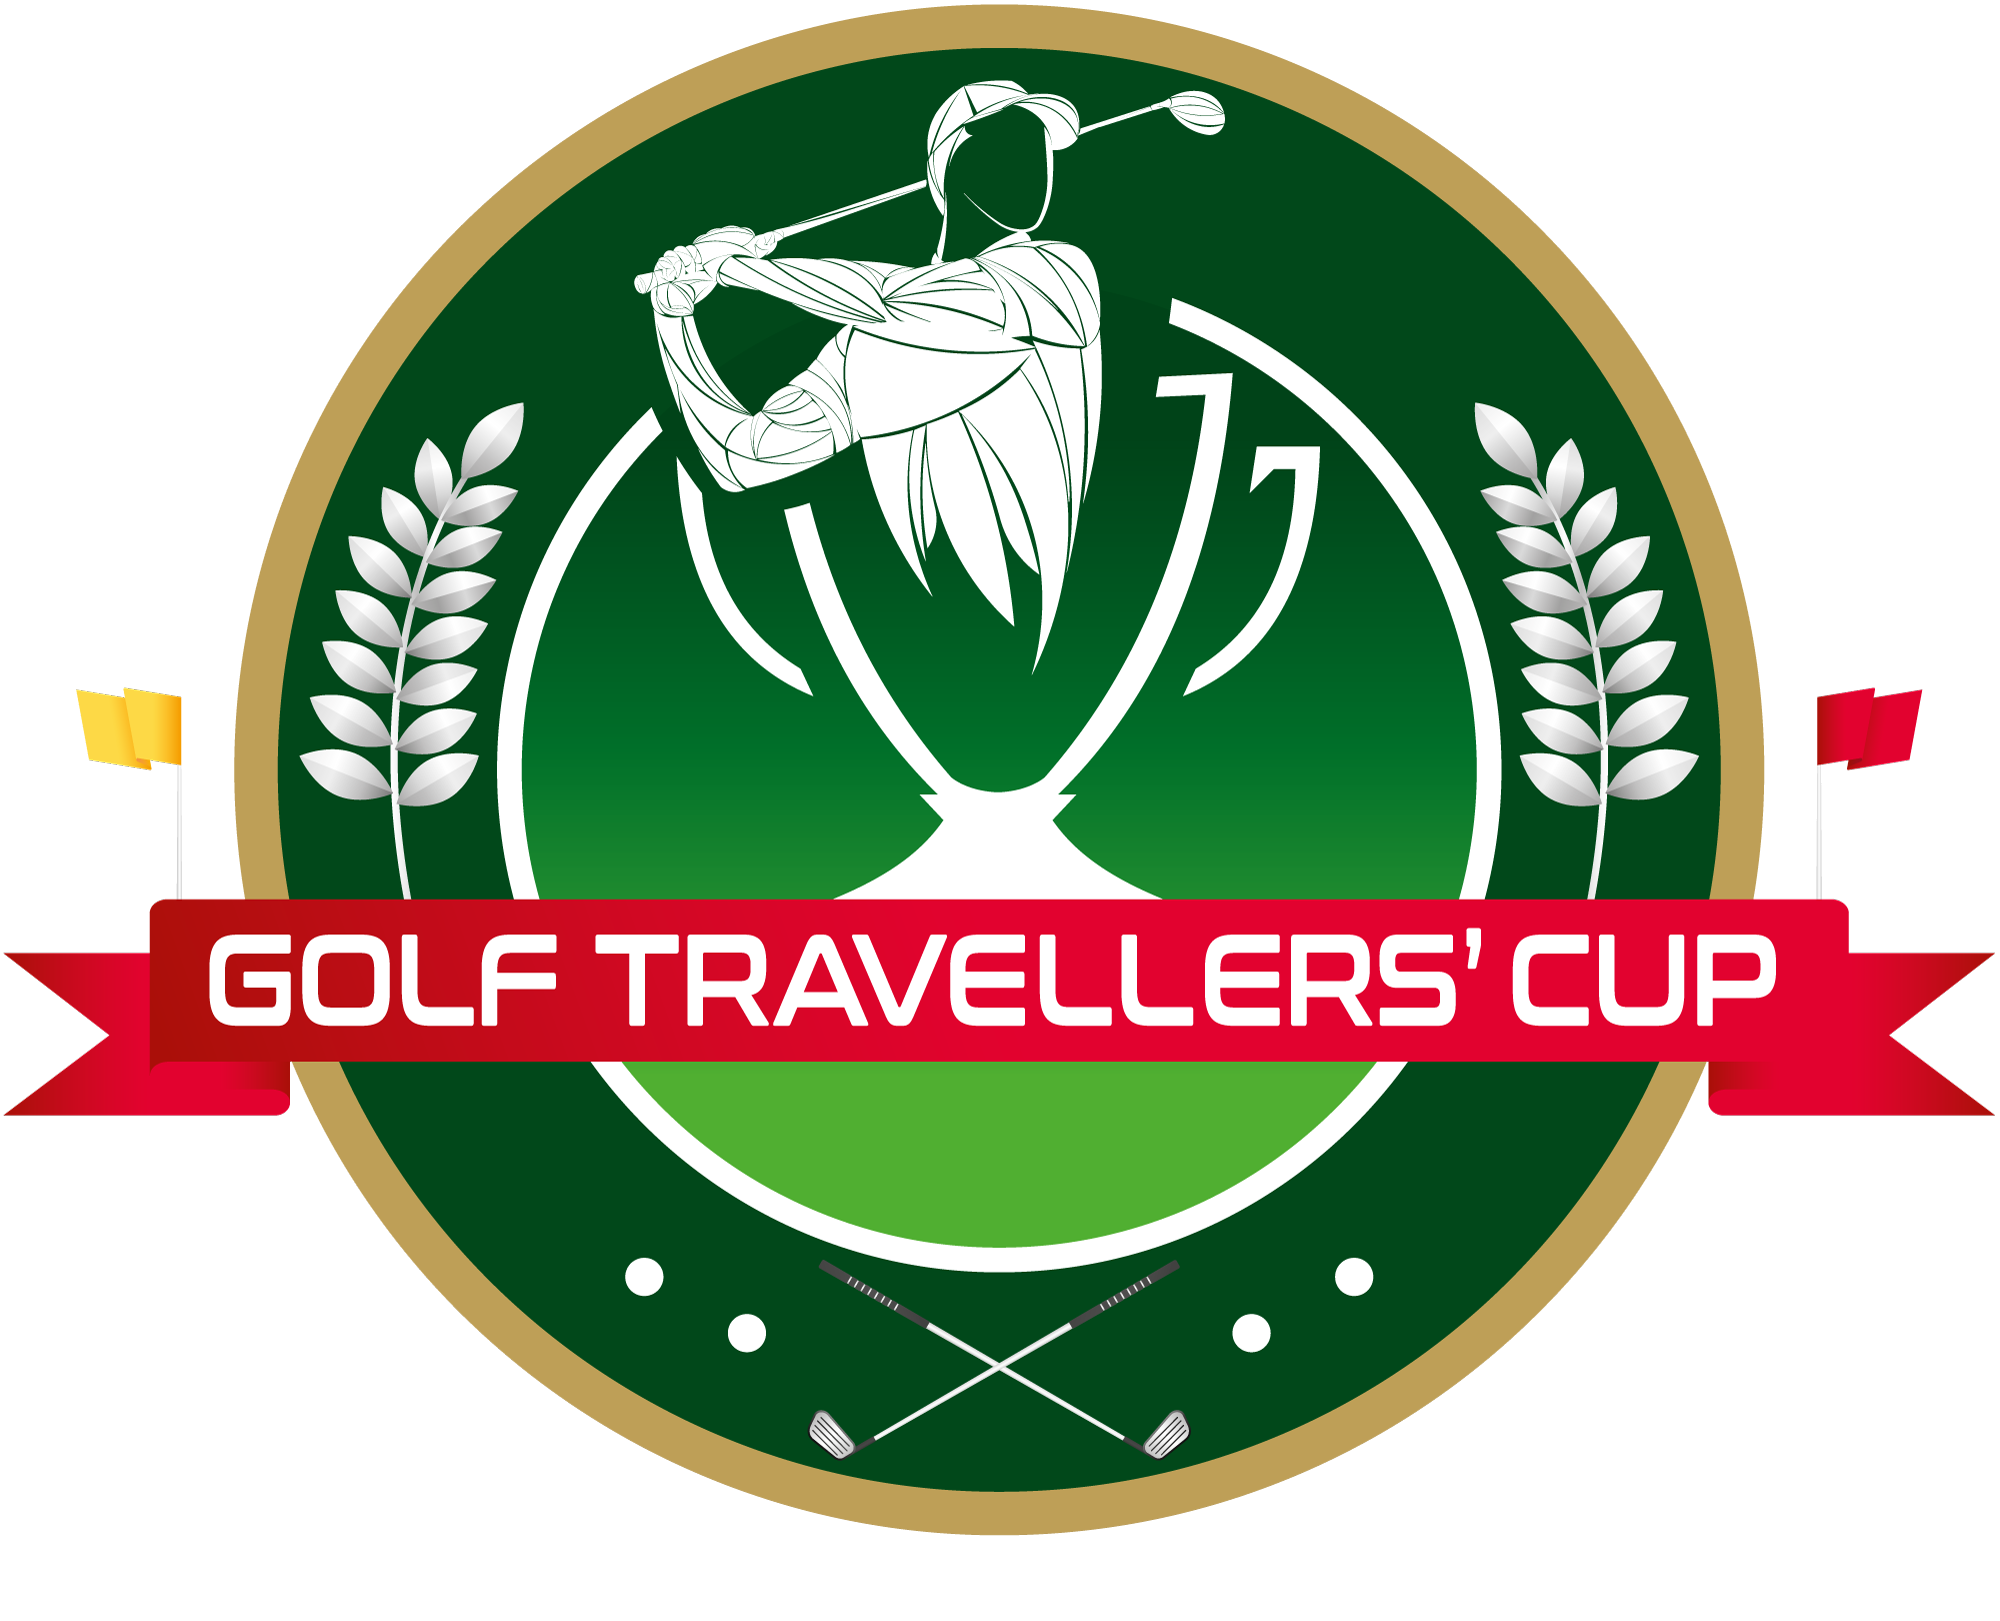 Golf Travellers'Cup, Compétition et séjour golfique à Tenerife